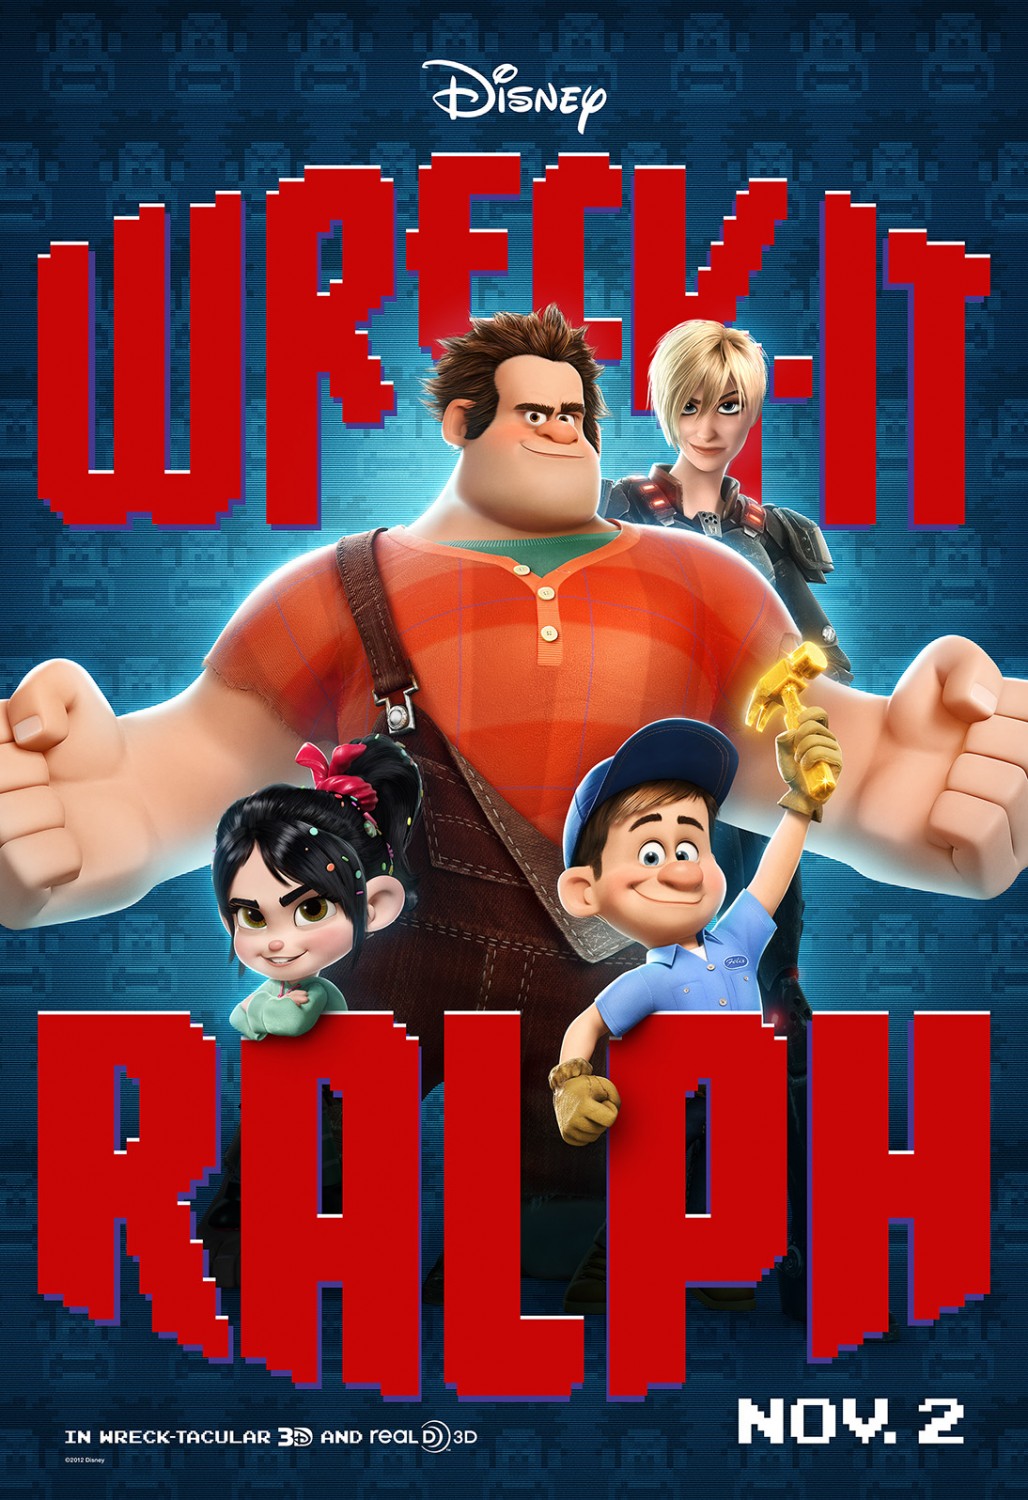 4 - Wreck-It Ralph